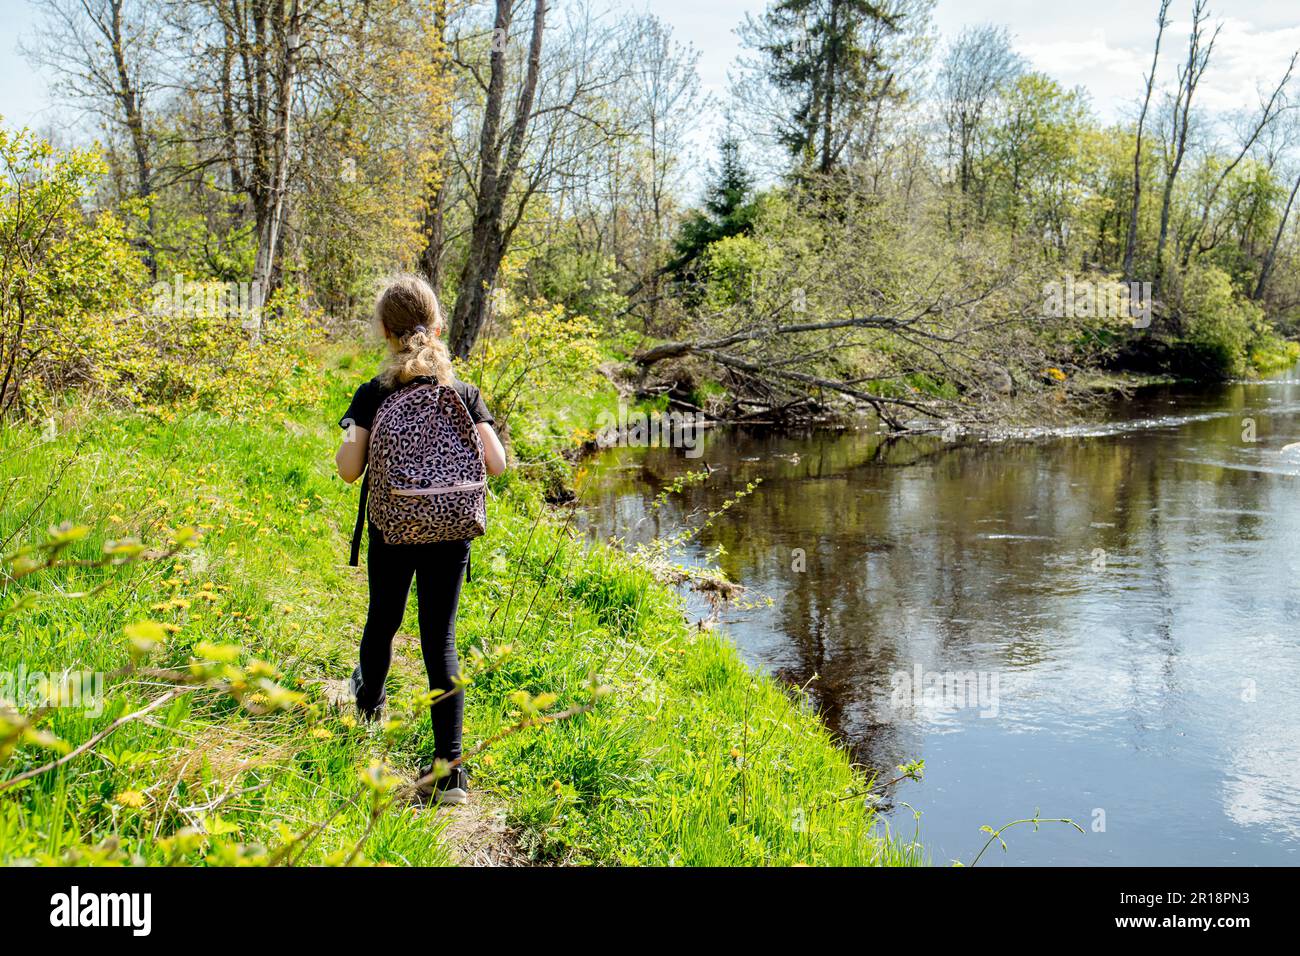 Rückansicht eines 9 Jahre alten Mädchens, das im Frühling alleine im Wald am Fluss wandert und mit einem Rucksack unterwegs ist. Wunderschöne idyllische Natur. Stockfoto